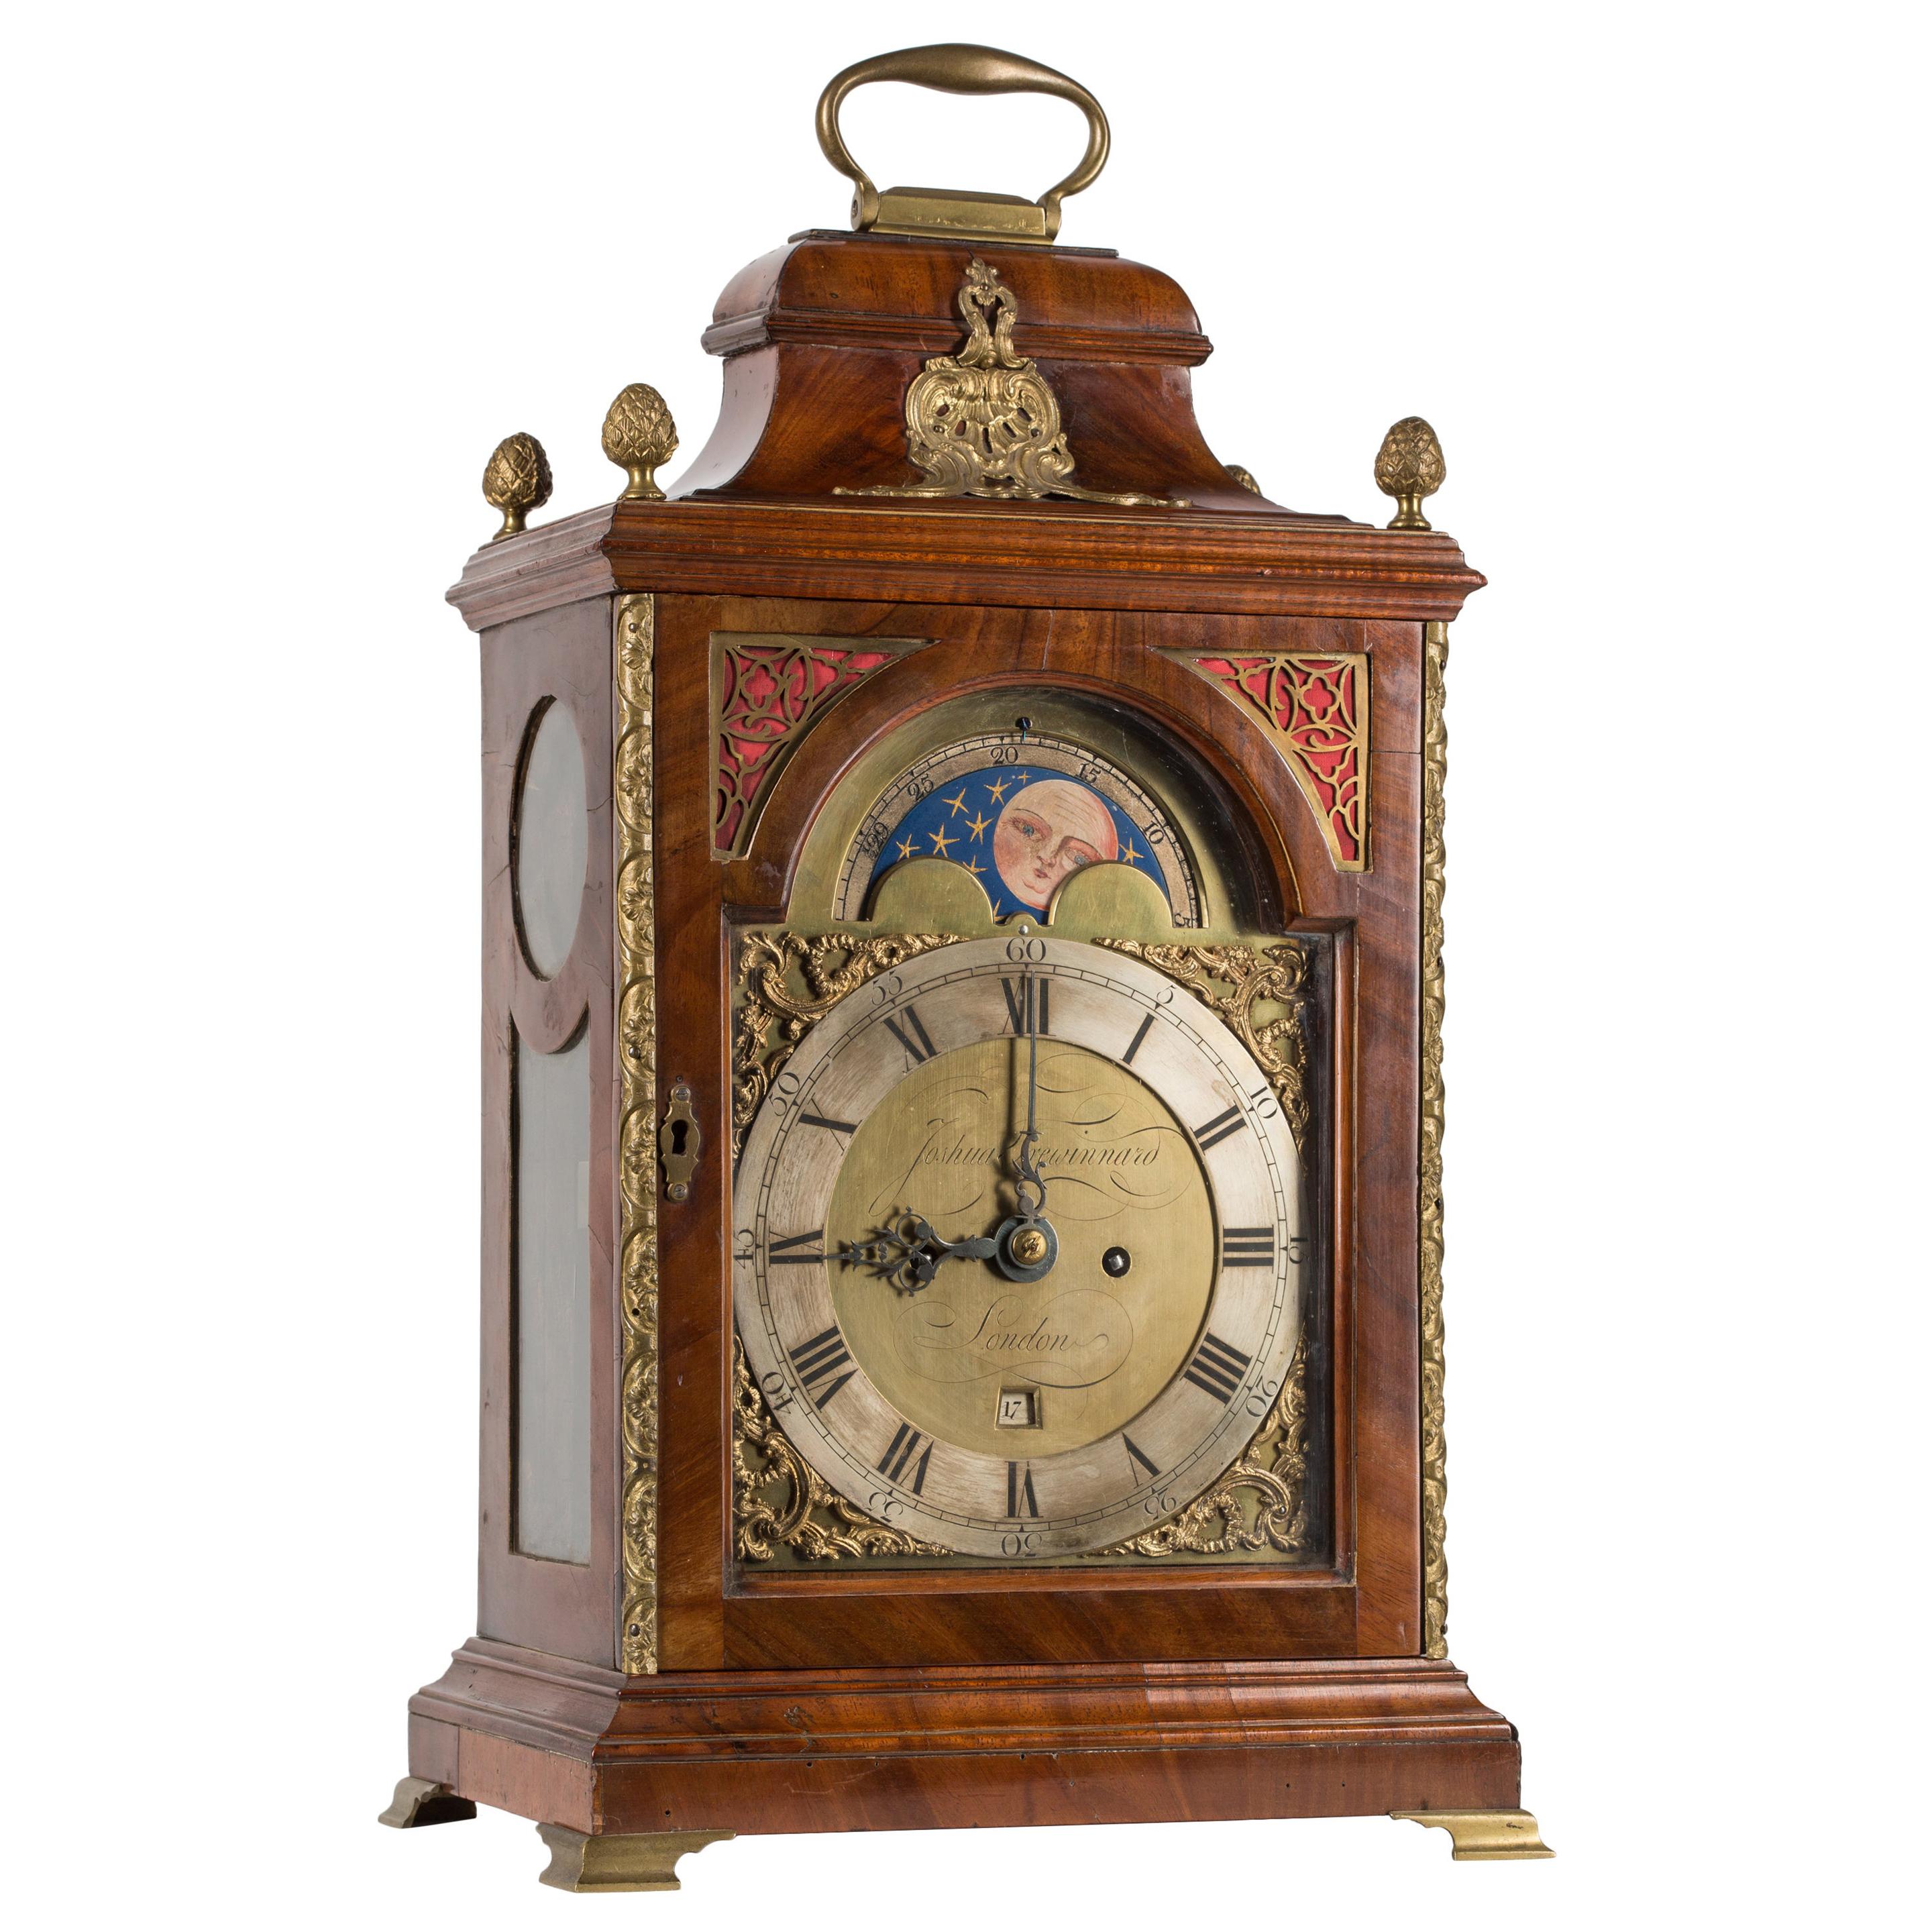 Uhr mit Mondphase-Zifferblatthalterung aus dem 18. Jahrhundert von Trewinnard aus London